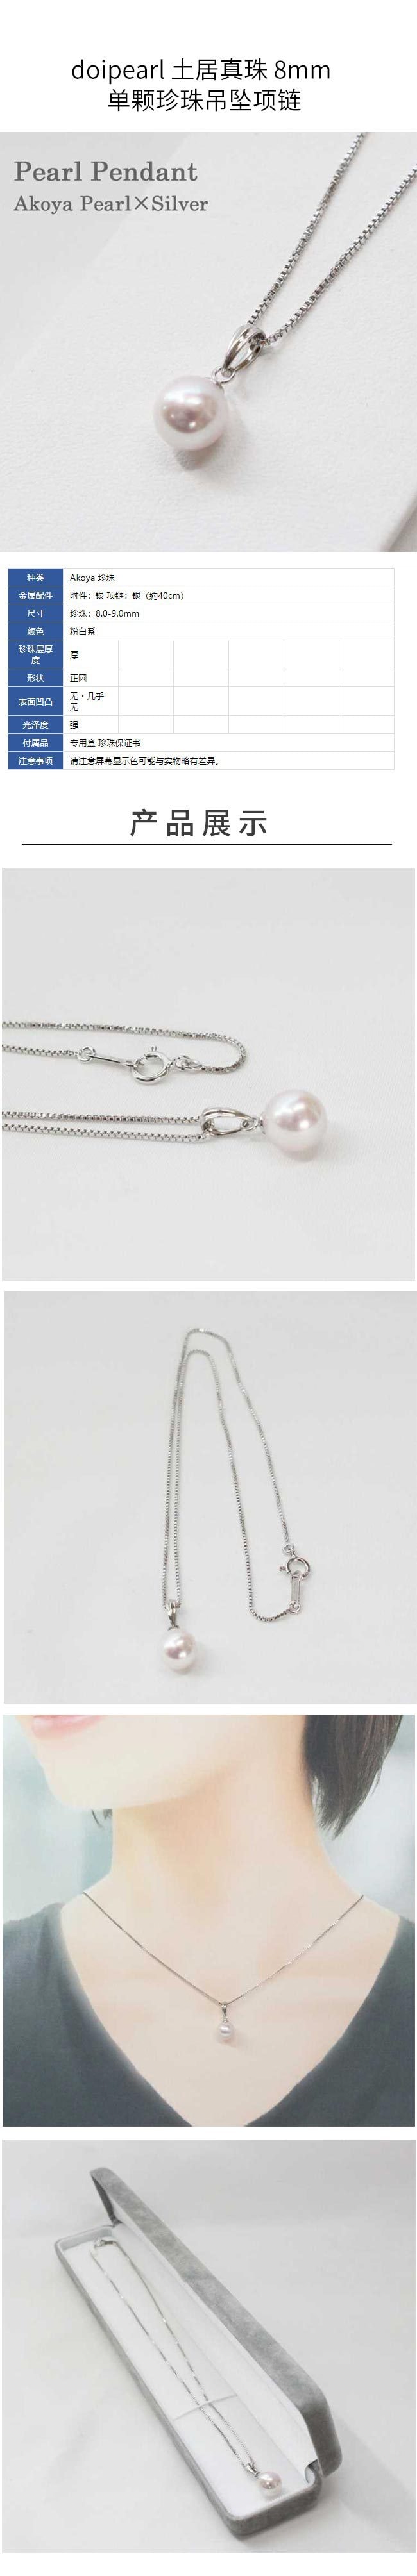 【日本直邮】doipearl 土居真珠 8mm 单颗珍珠吊坠项链